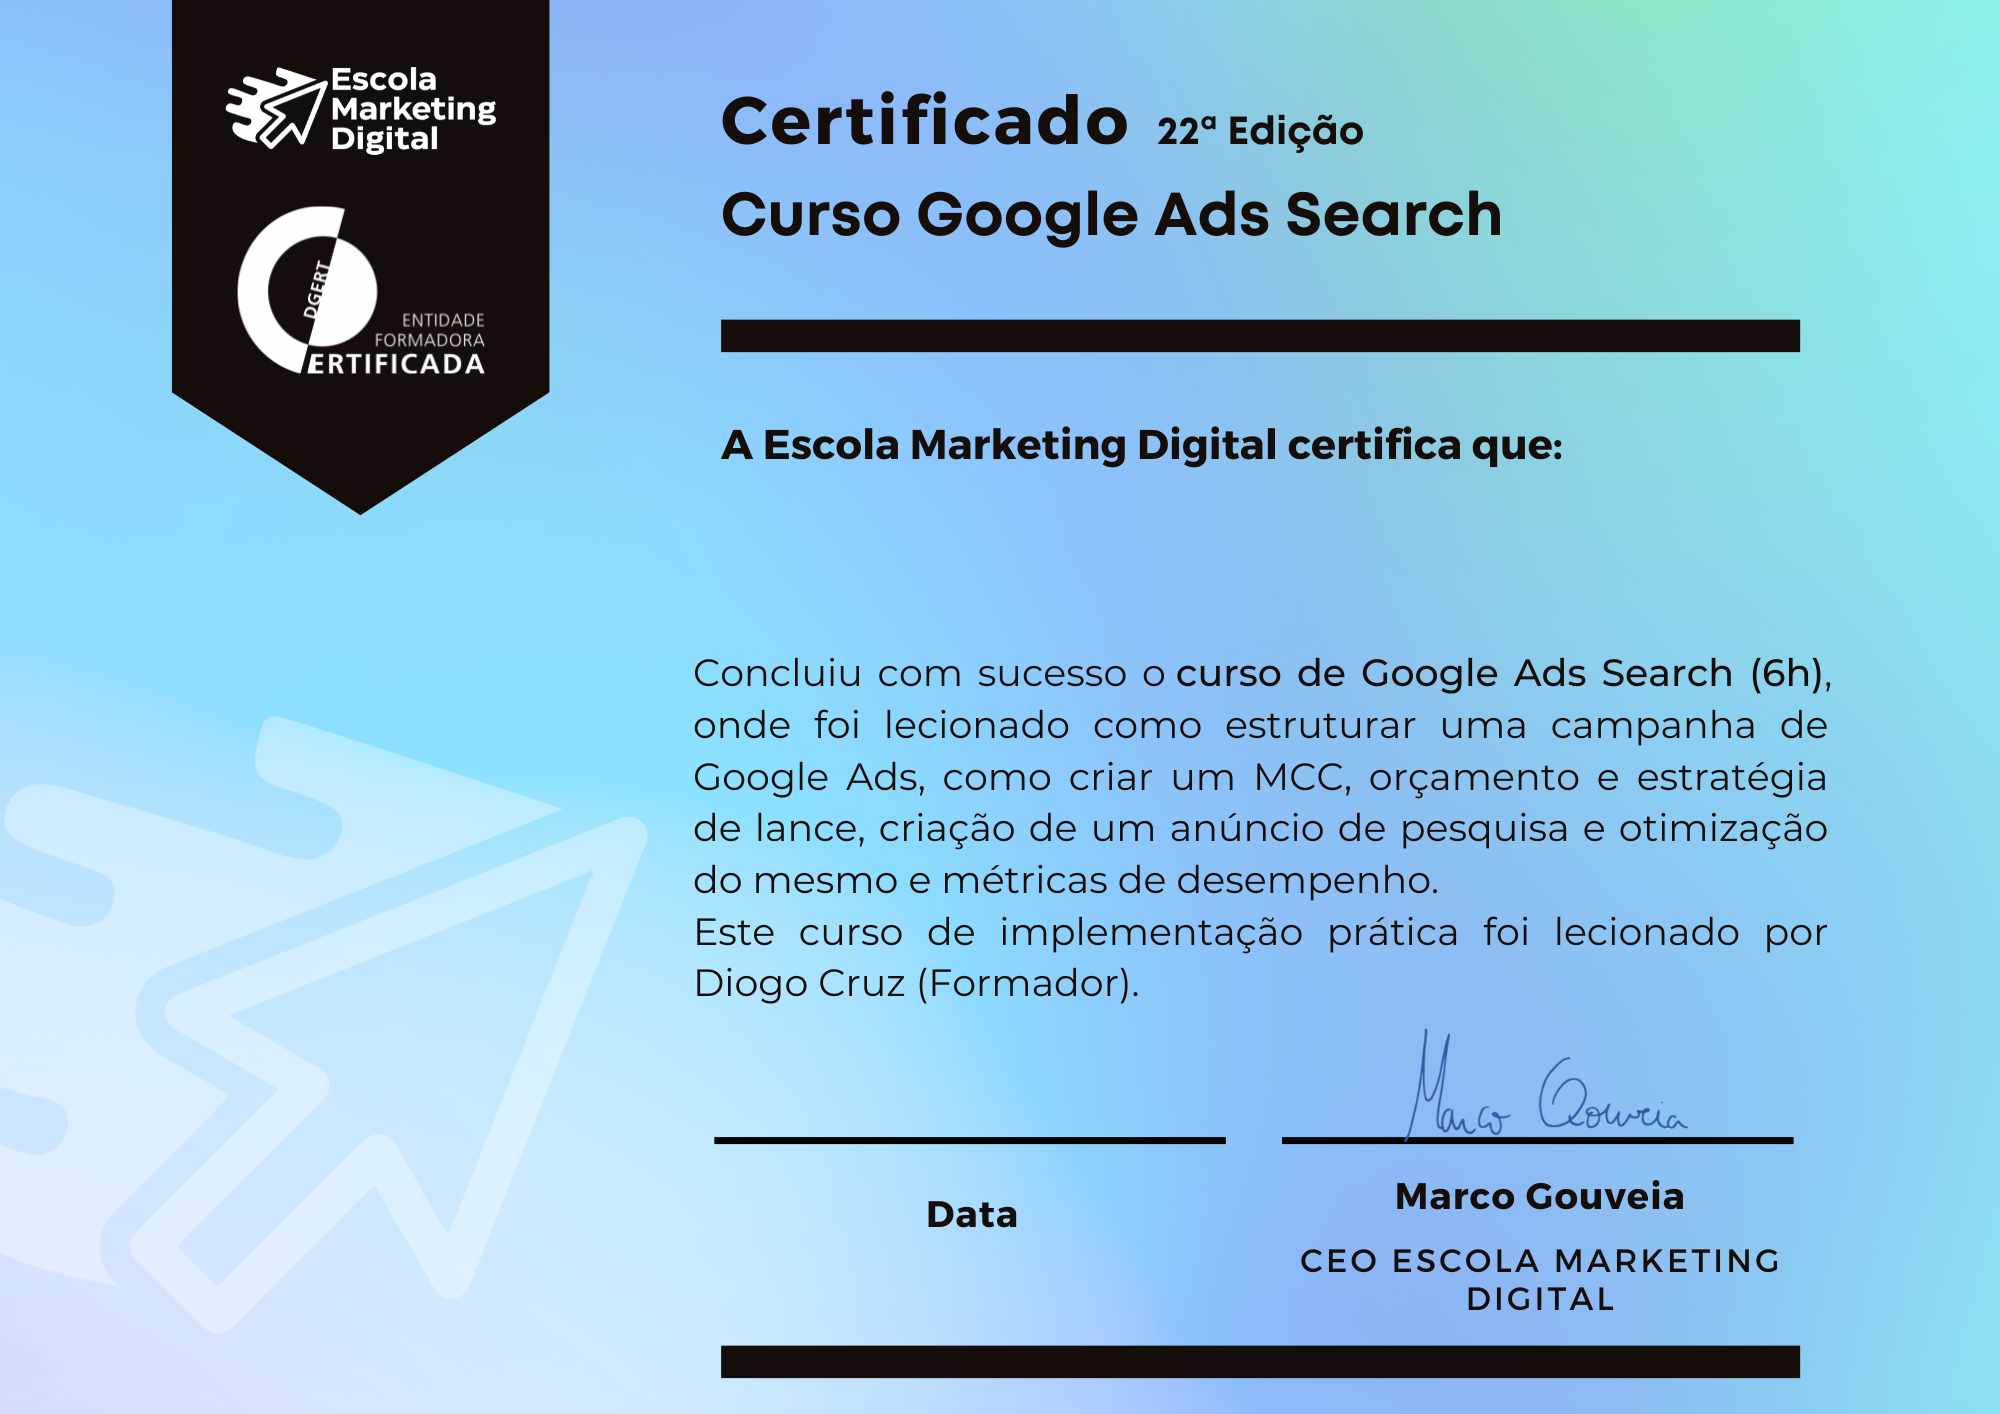 Certificado de participacao google ads search 22 edicao